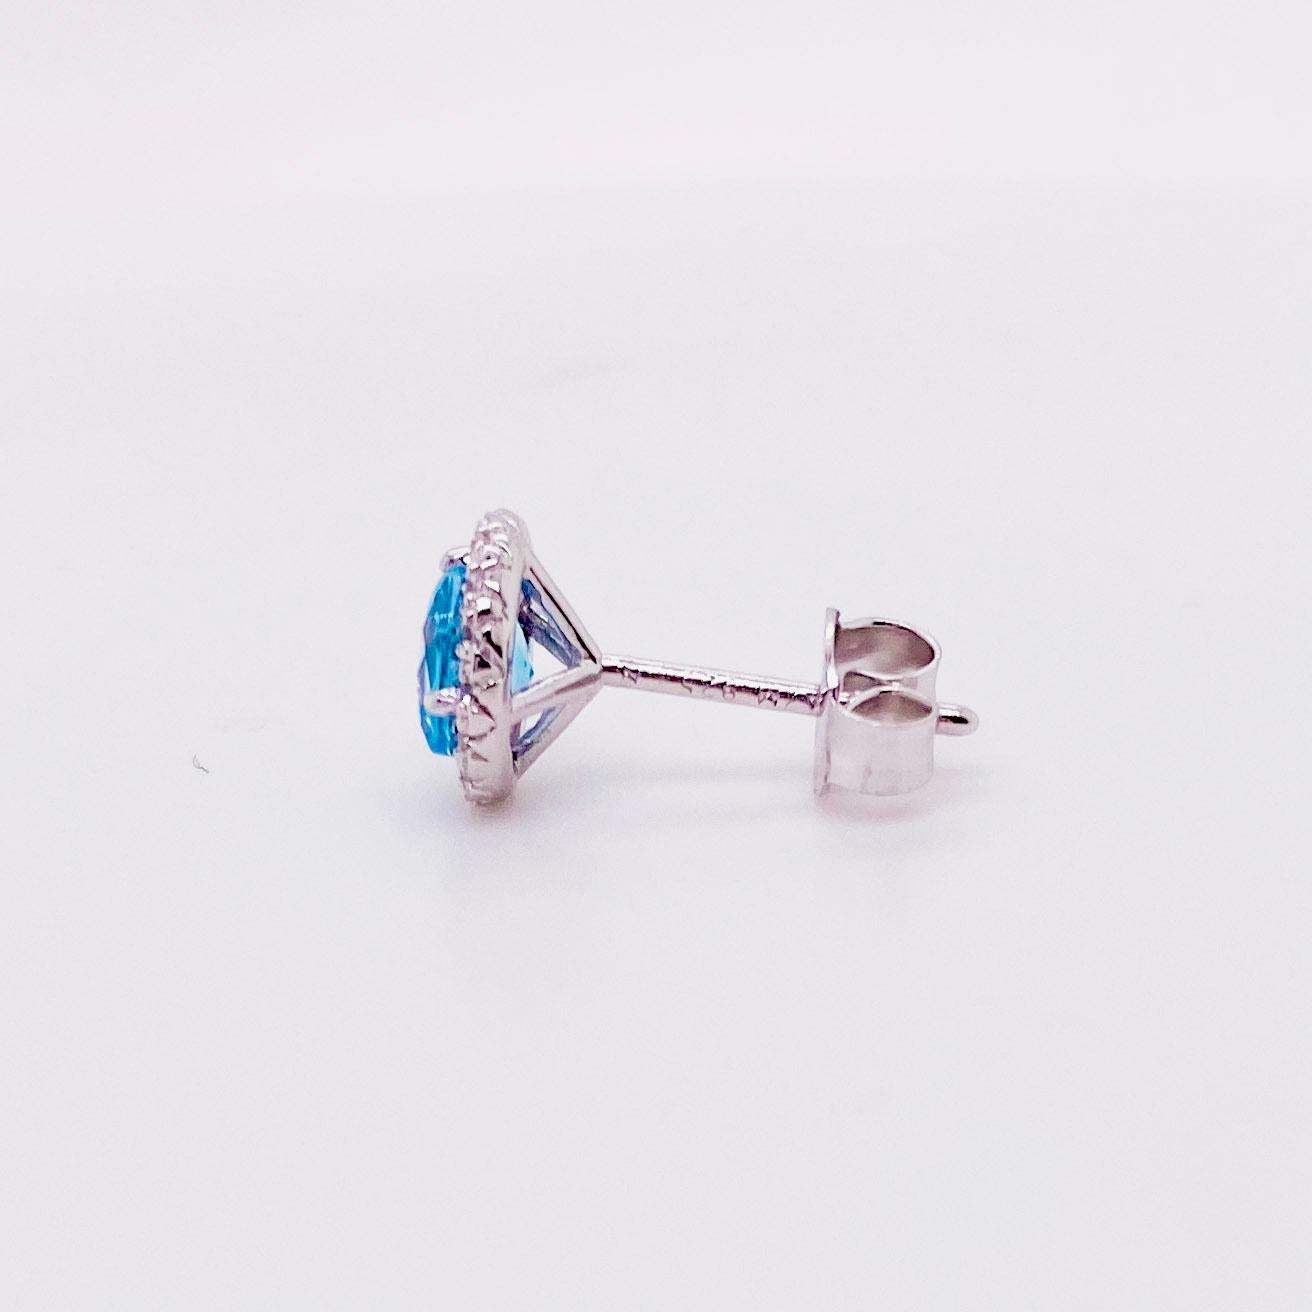 blue topaz halo earrings